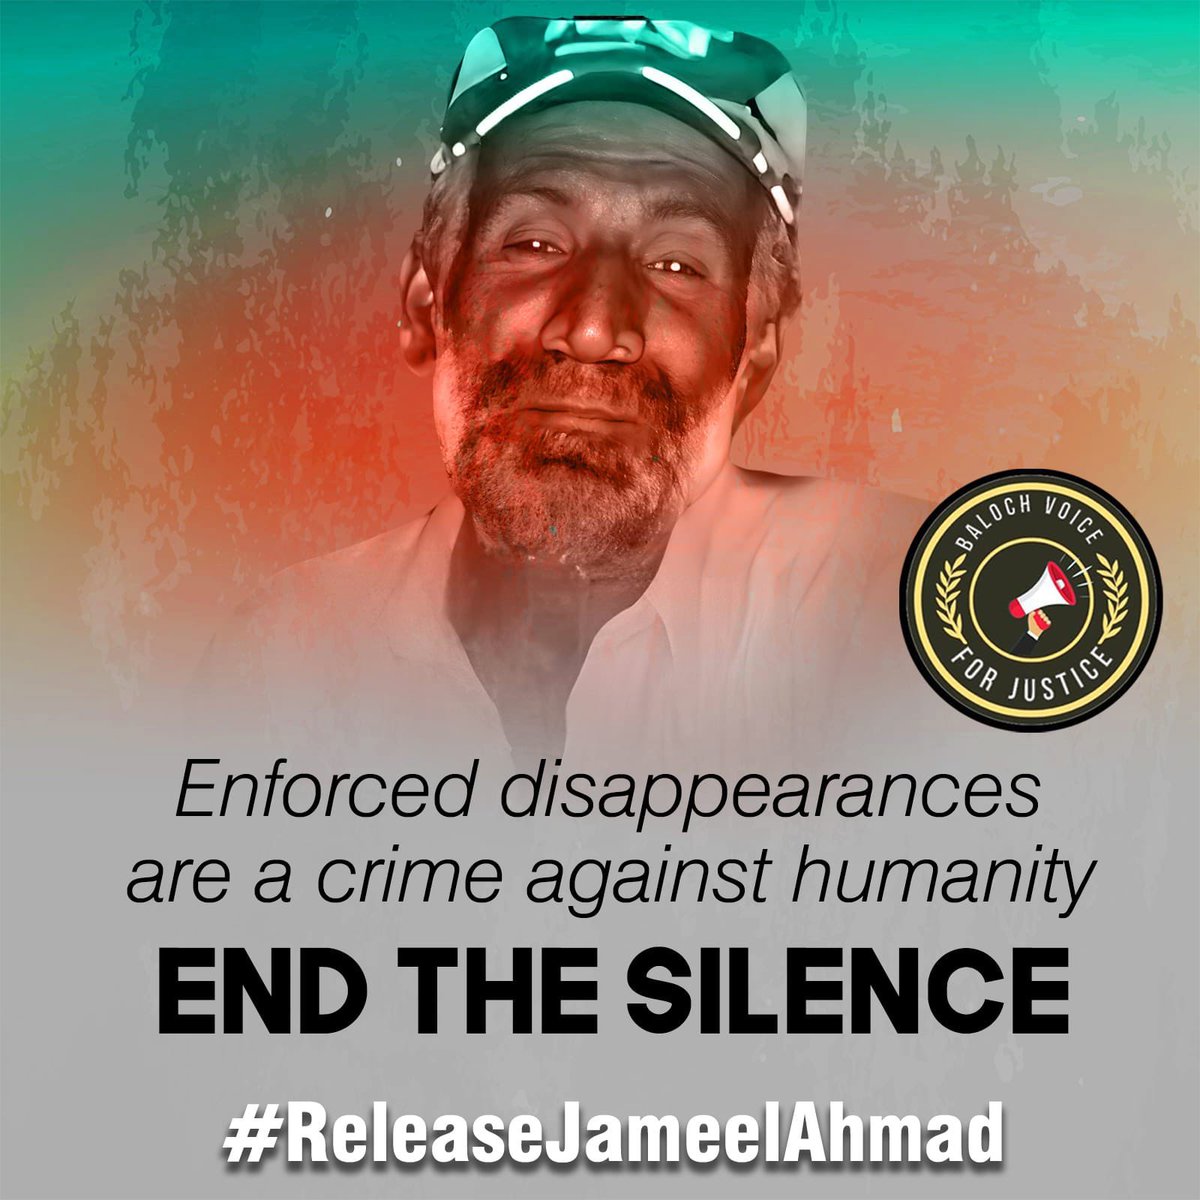 آواران سے تعلق رکھنے والے جمیل احمد گزشتہ گیارہ سالوں سے جبری گمشدگی کا شکار ہے اور جمیل کے خاندان والے ایک دہائی سے زیادہ عرصے سے پریشانیوں اور زہنی ازیتوں میں مبتلا ہیں لیکن جمیل کوتاحال منظرعام پر نہیں لایا گیا۔ ایک بنیادی مطالبہ ہیکہ ہمارے گمشدہ لوگوں کو صرف عدالتوں میں پیش